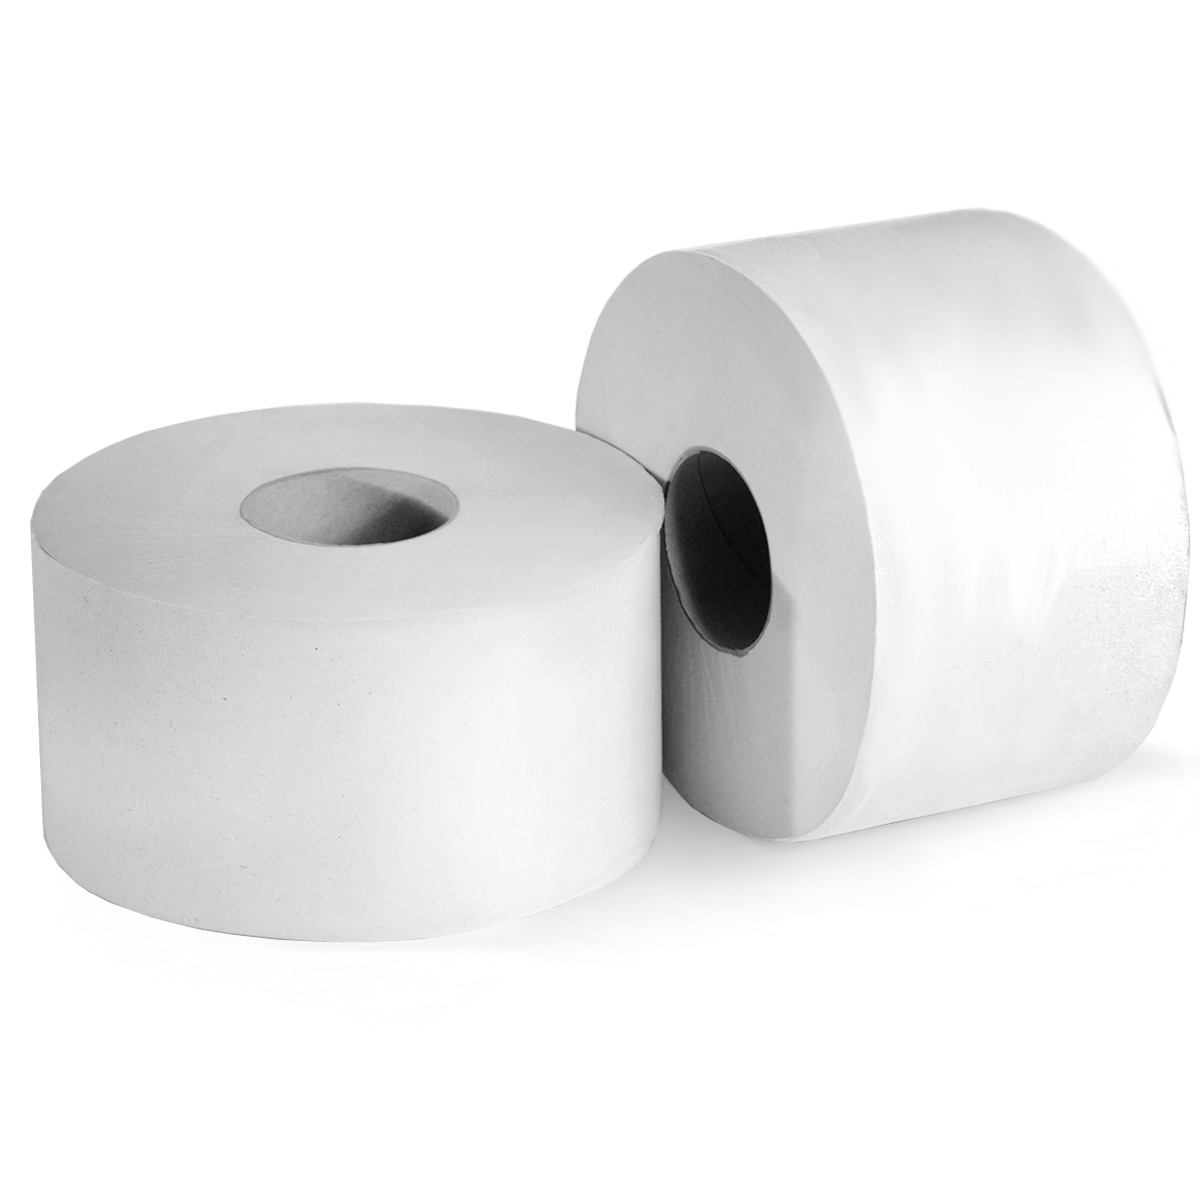 Как выбрать туалетную бумагу? рейтинг лучших марок туалетной бумаги от ведущих производителей